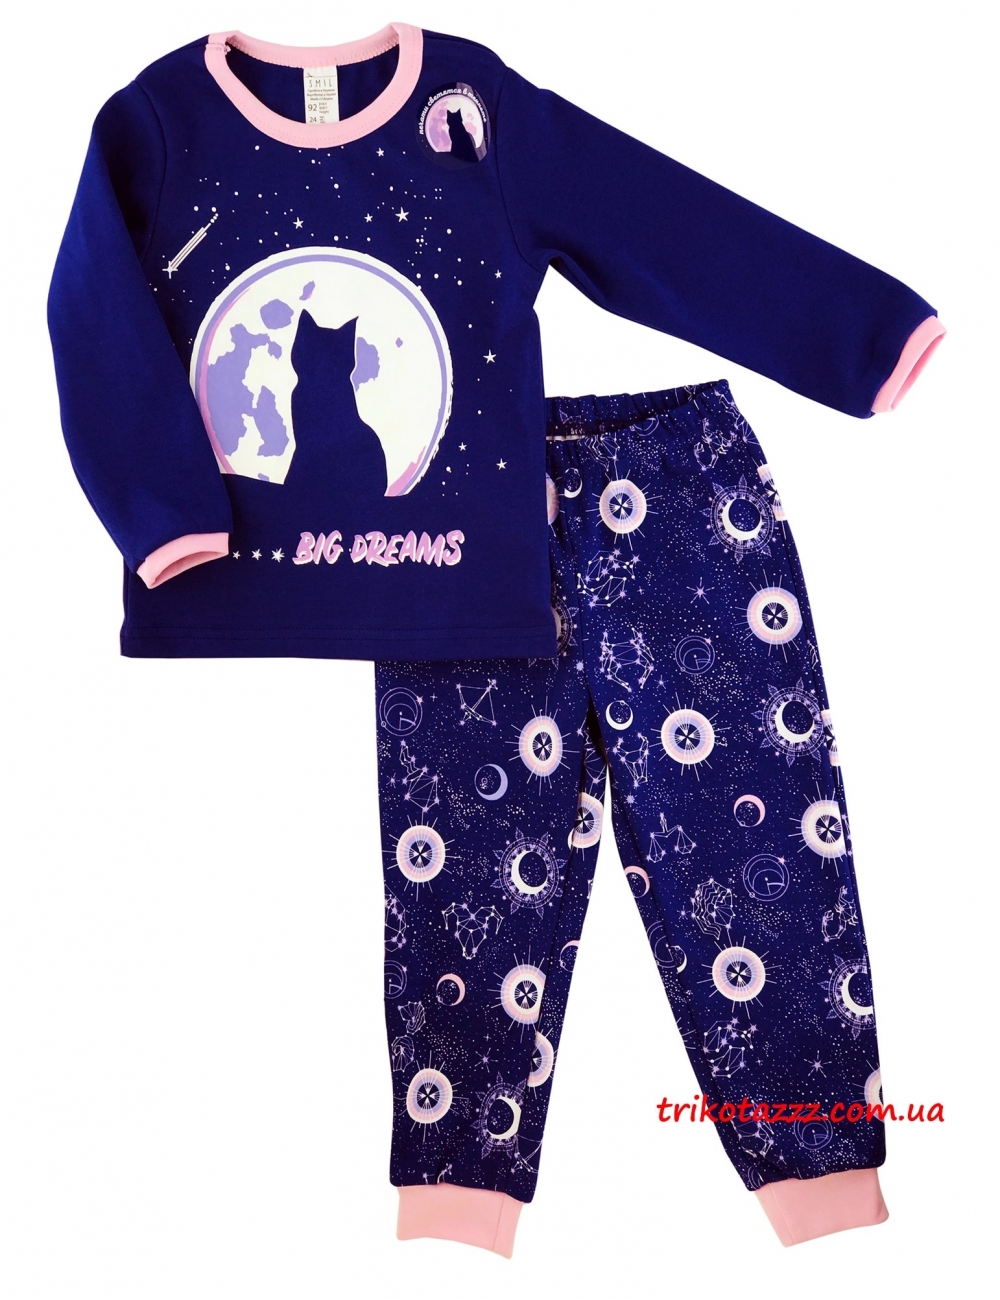 Детская пижама для девочек (подростков) светящаяся в темноте тм"Смил" Мечты